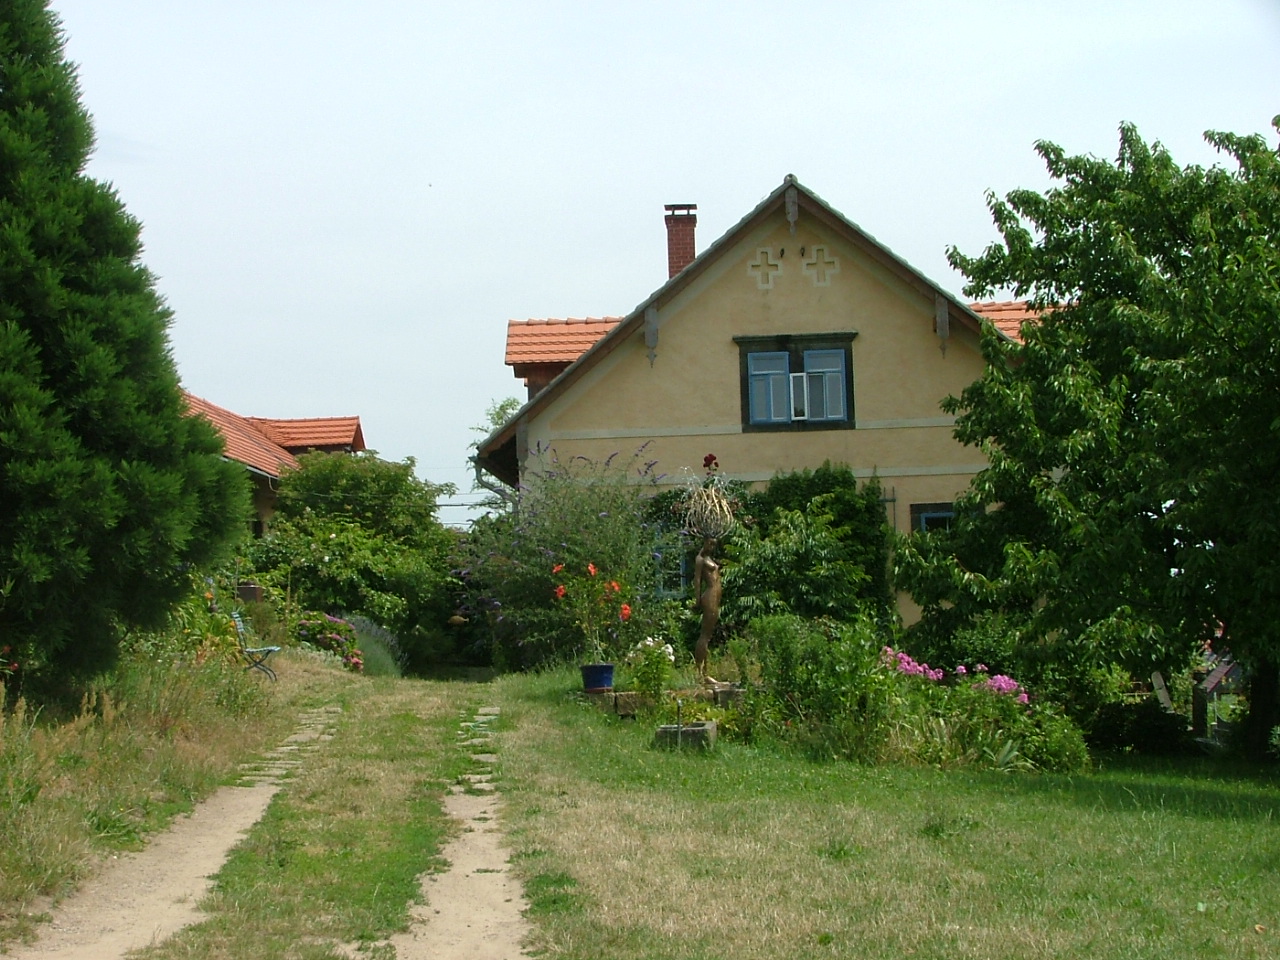 Gartenimpression in Pillnitz